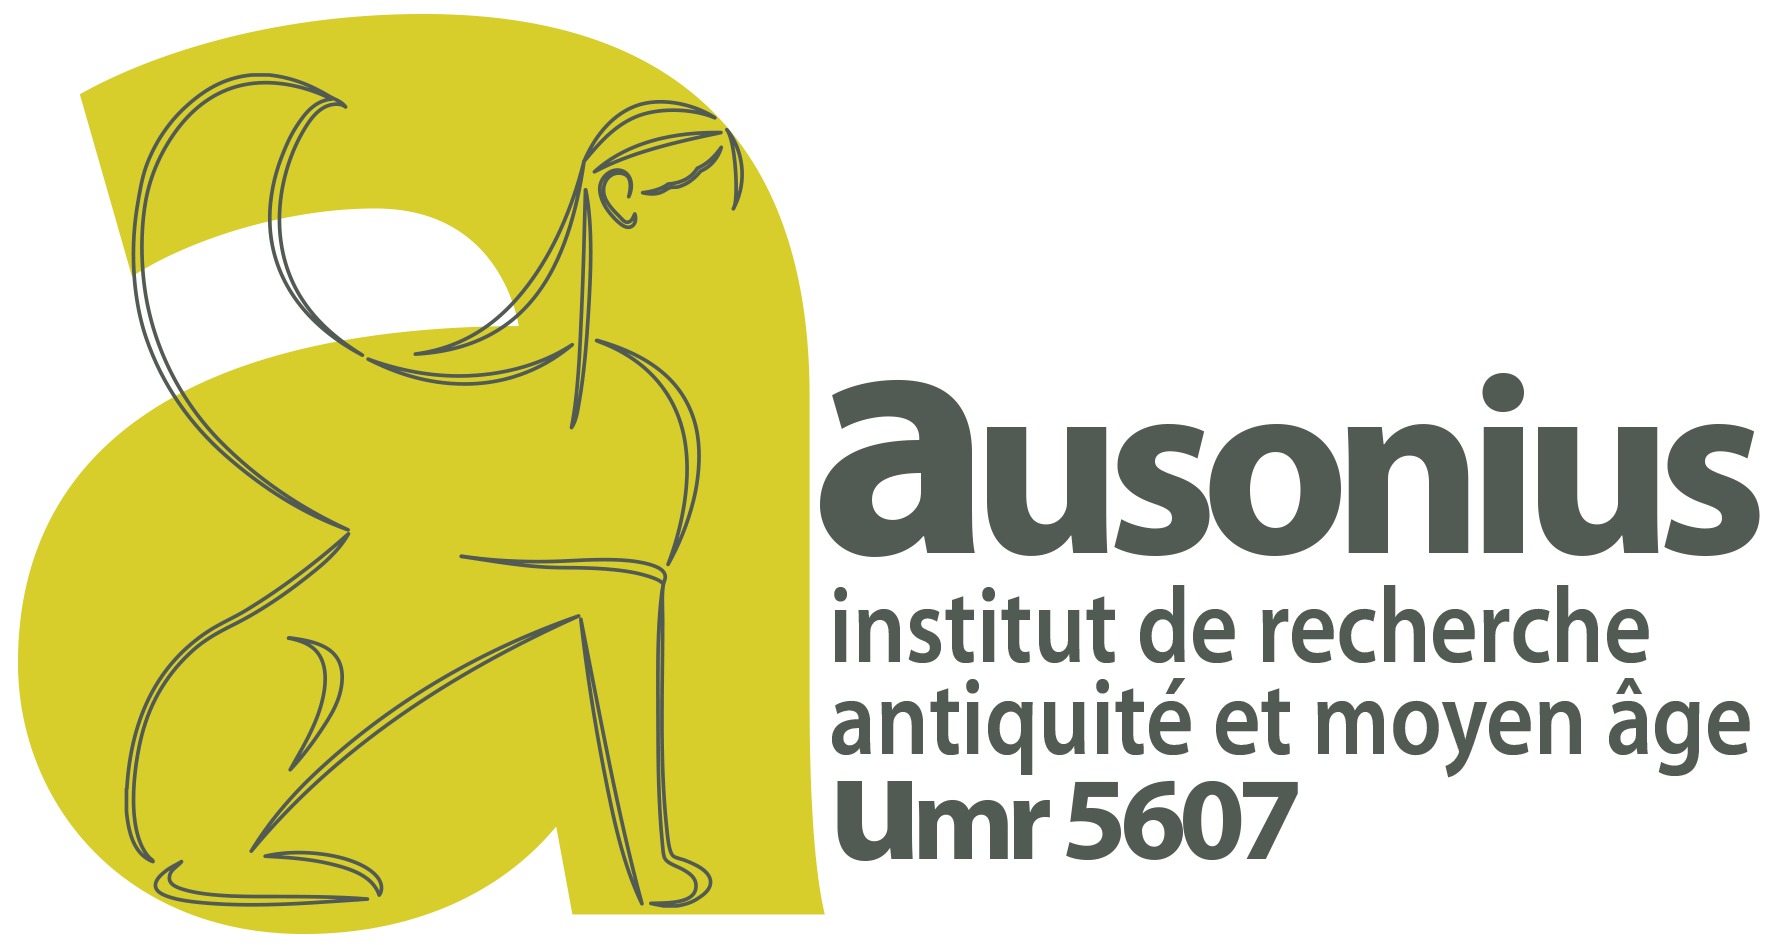 Ausonius (UMR 5607)